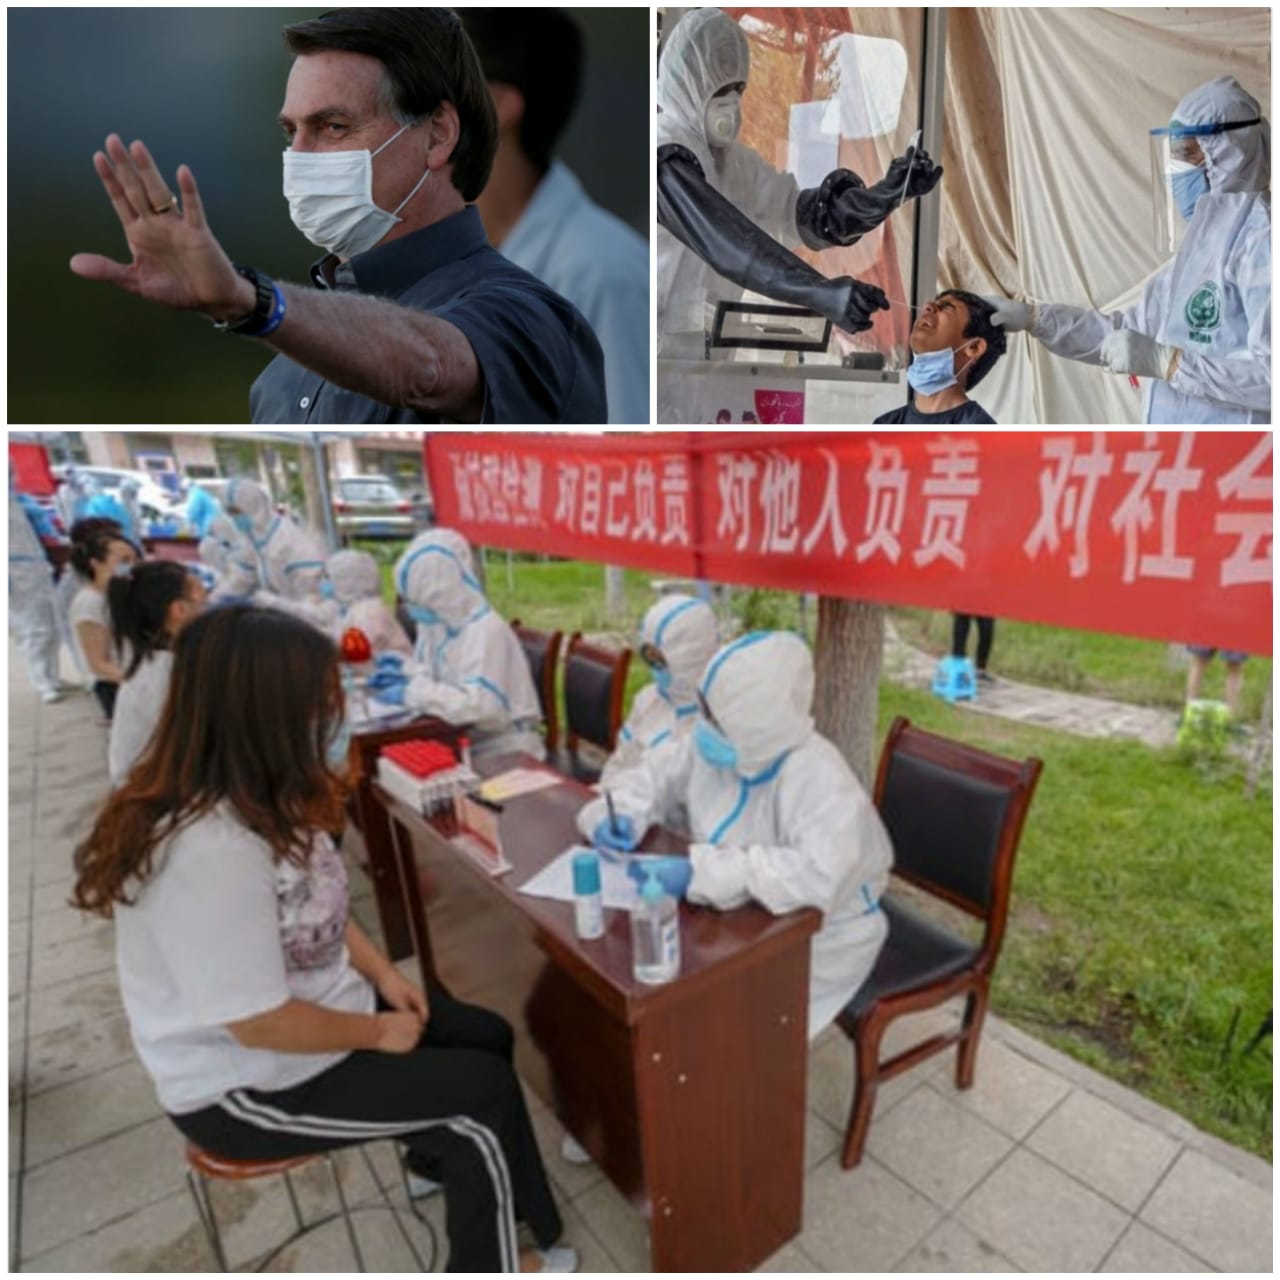  वैक्सीन बनाने के लिए चीन के साथ काम करने को तैयार-ट्रम्प